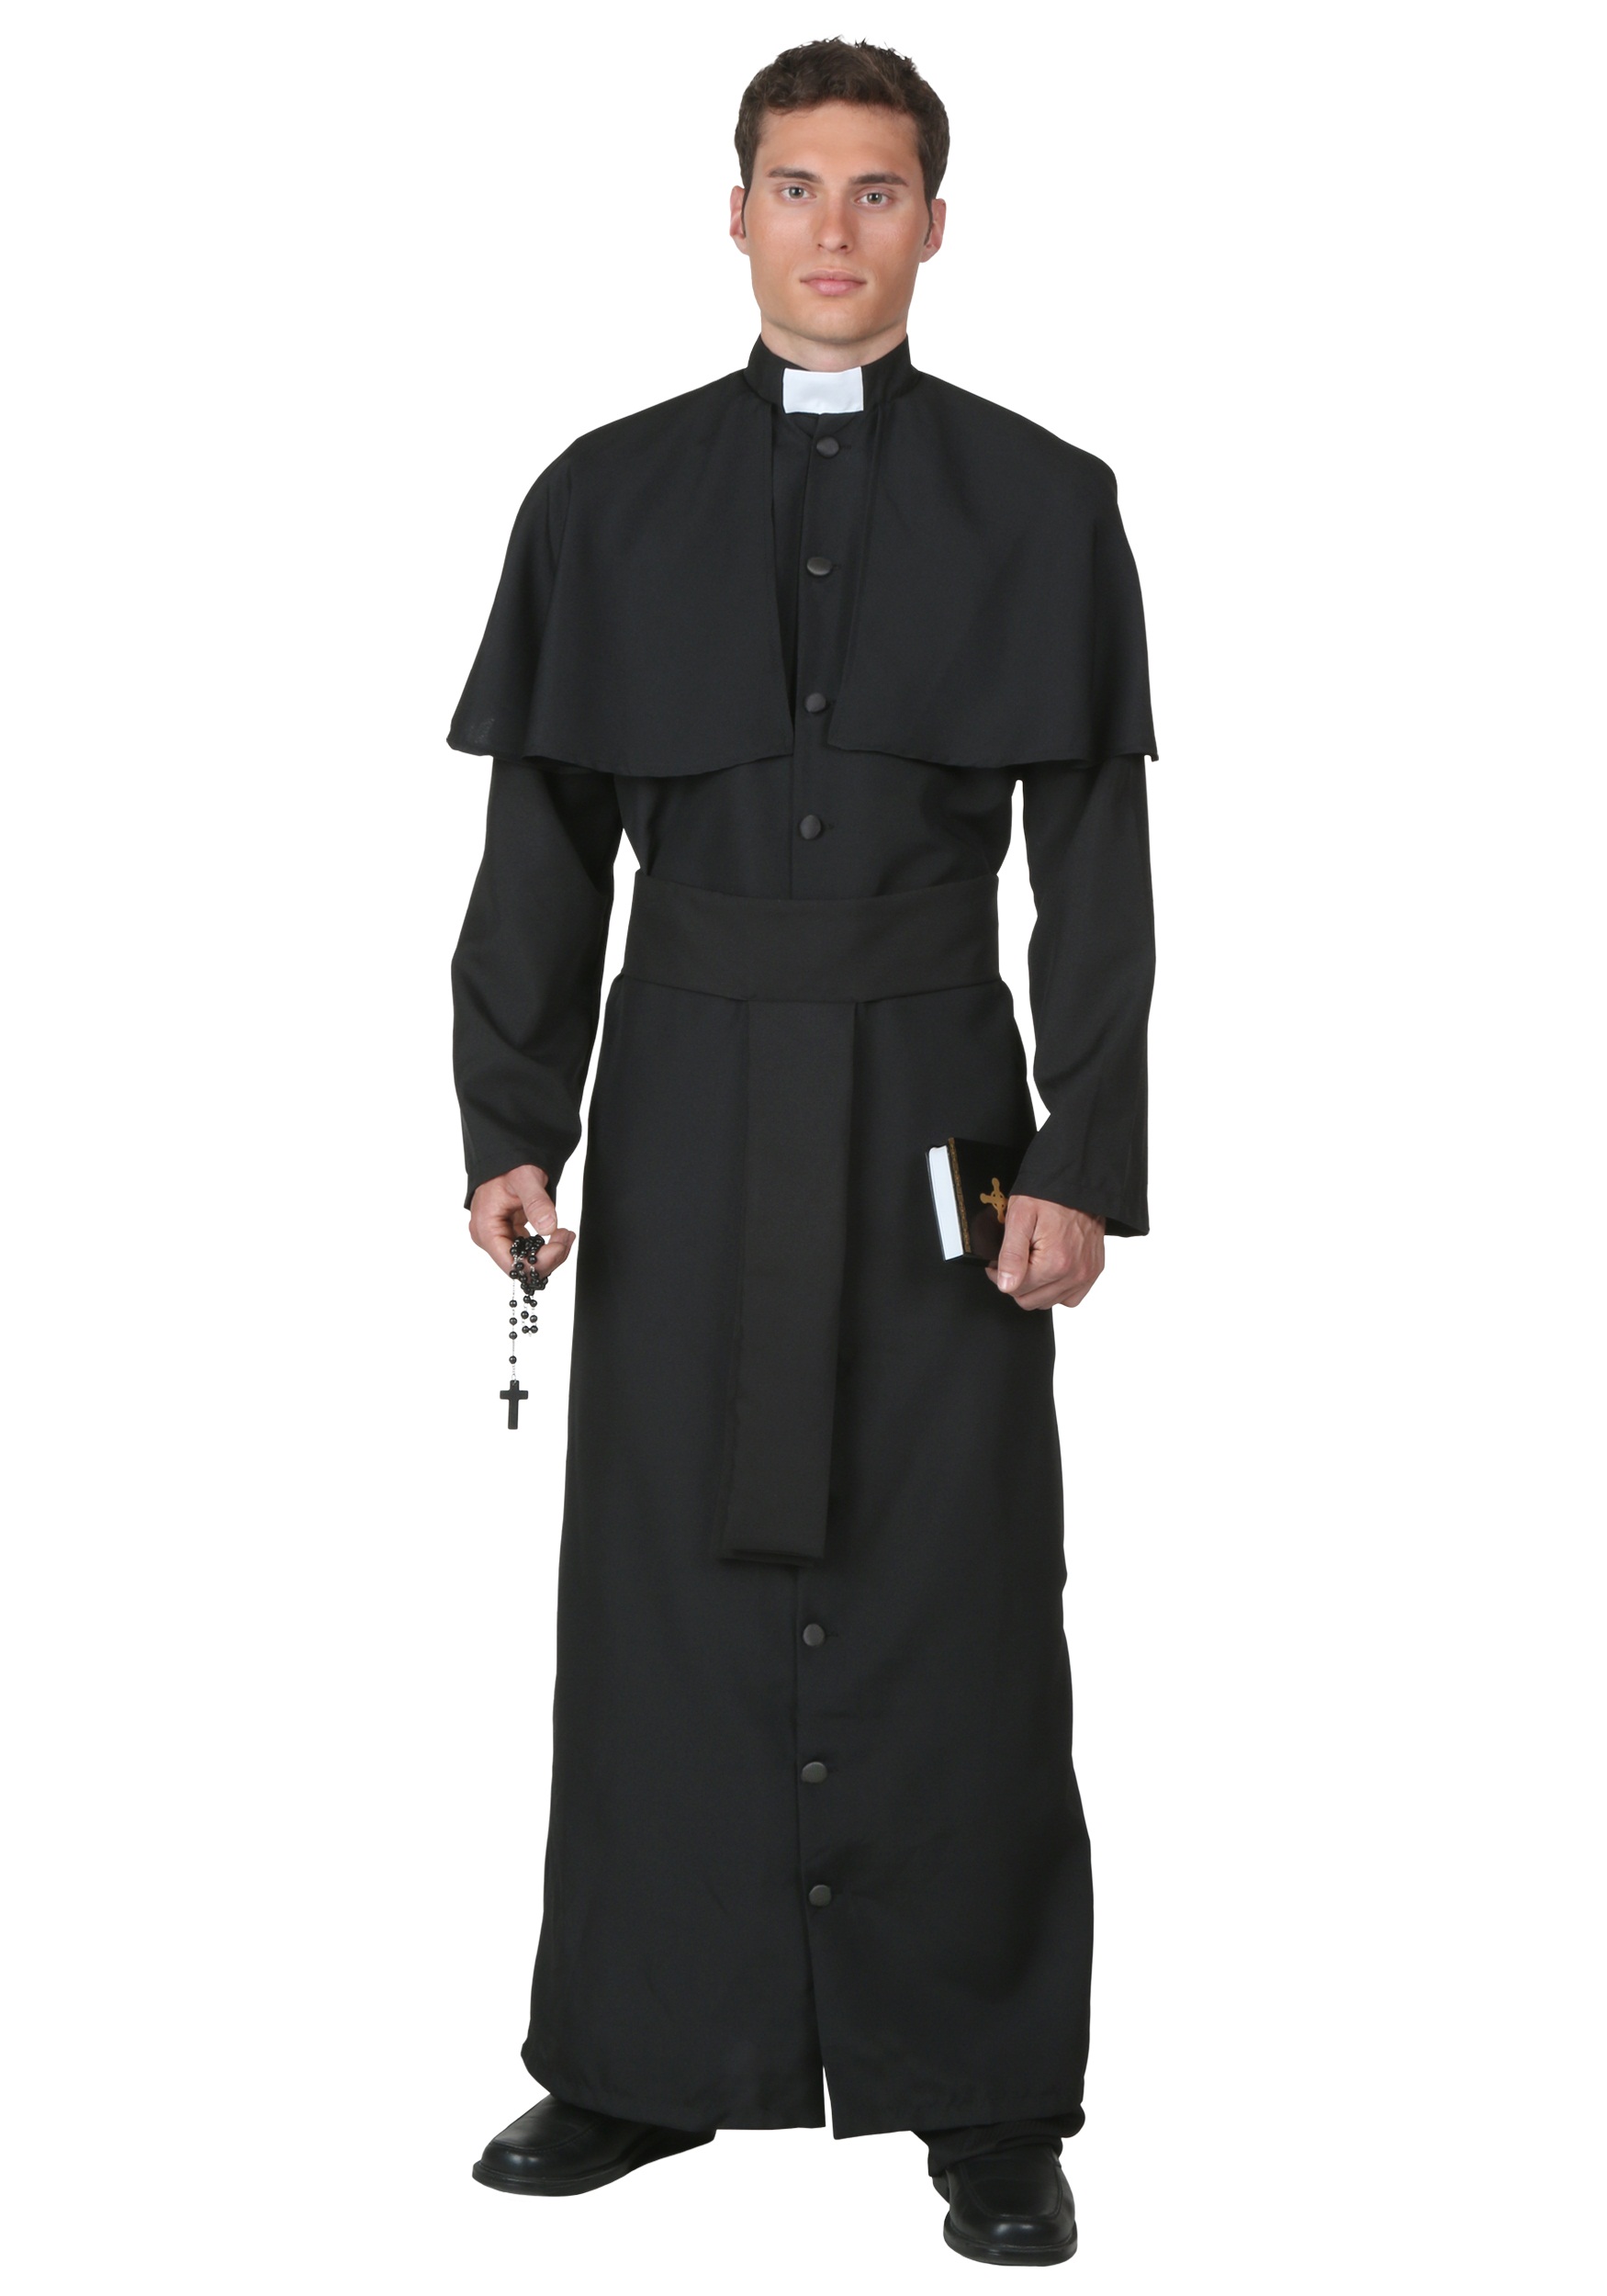 Priest Uniform 113